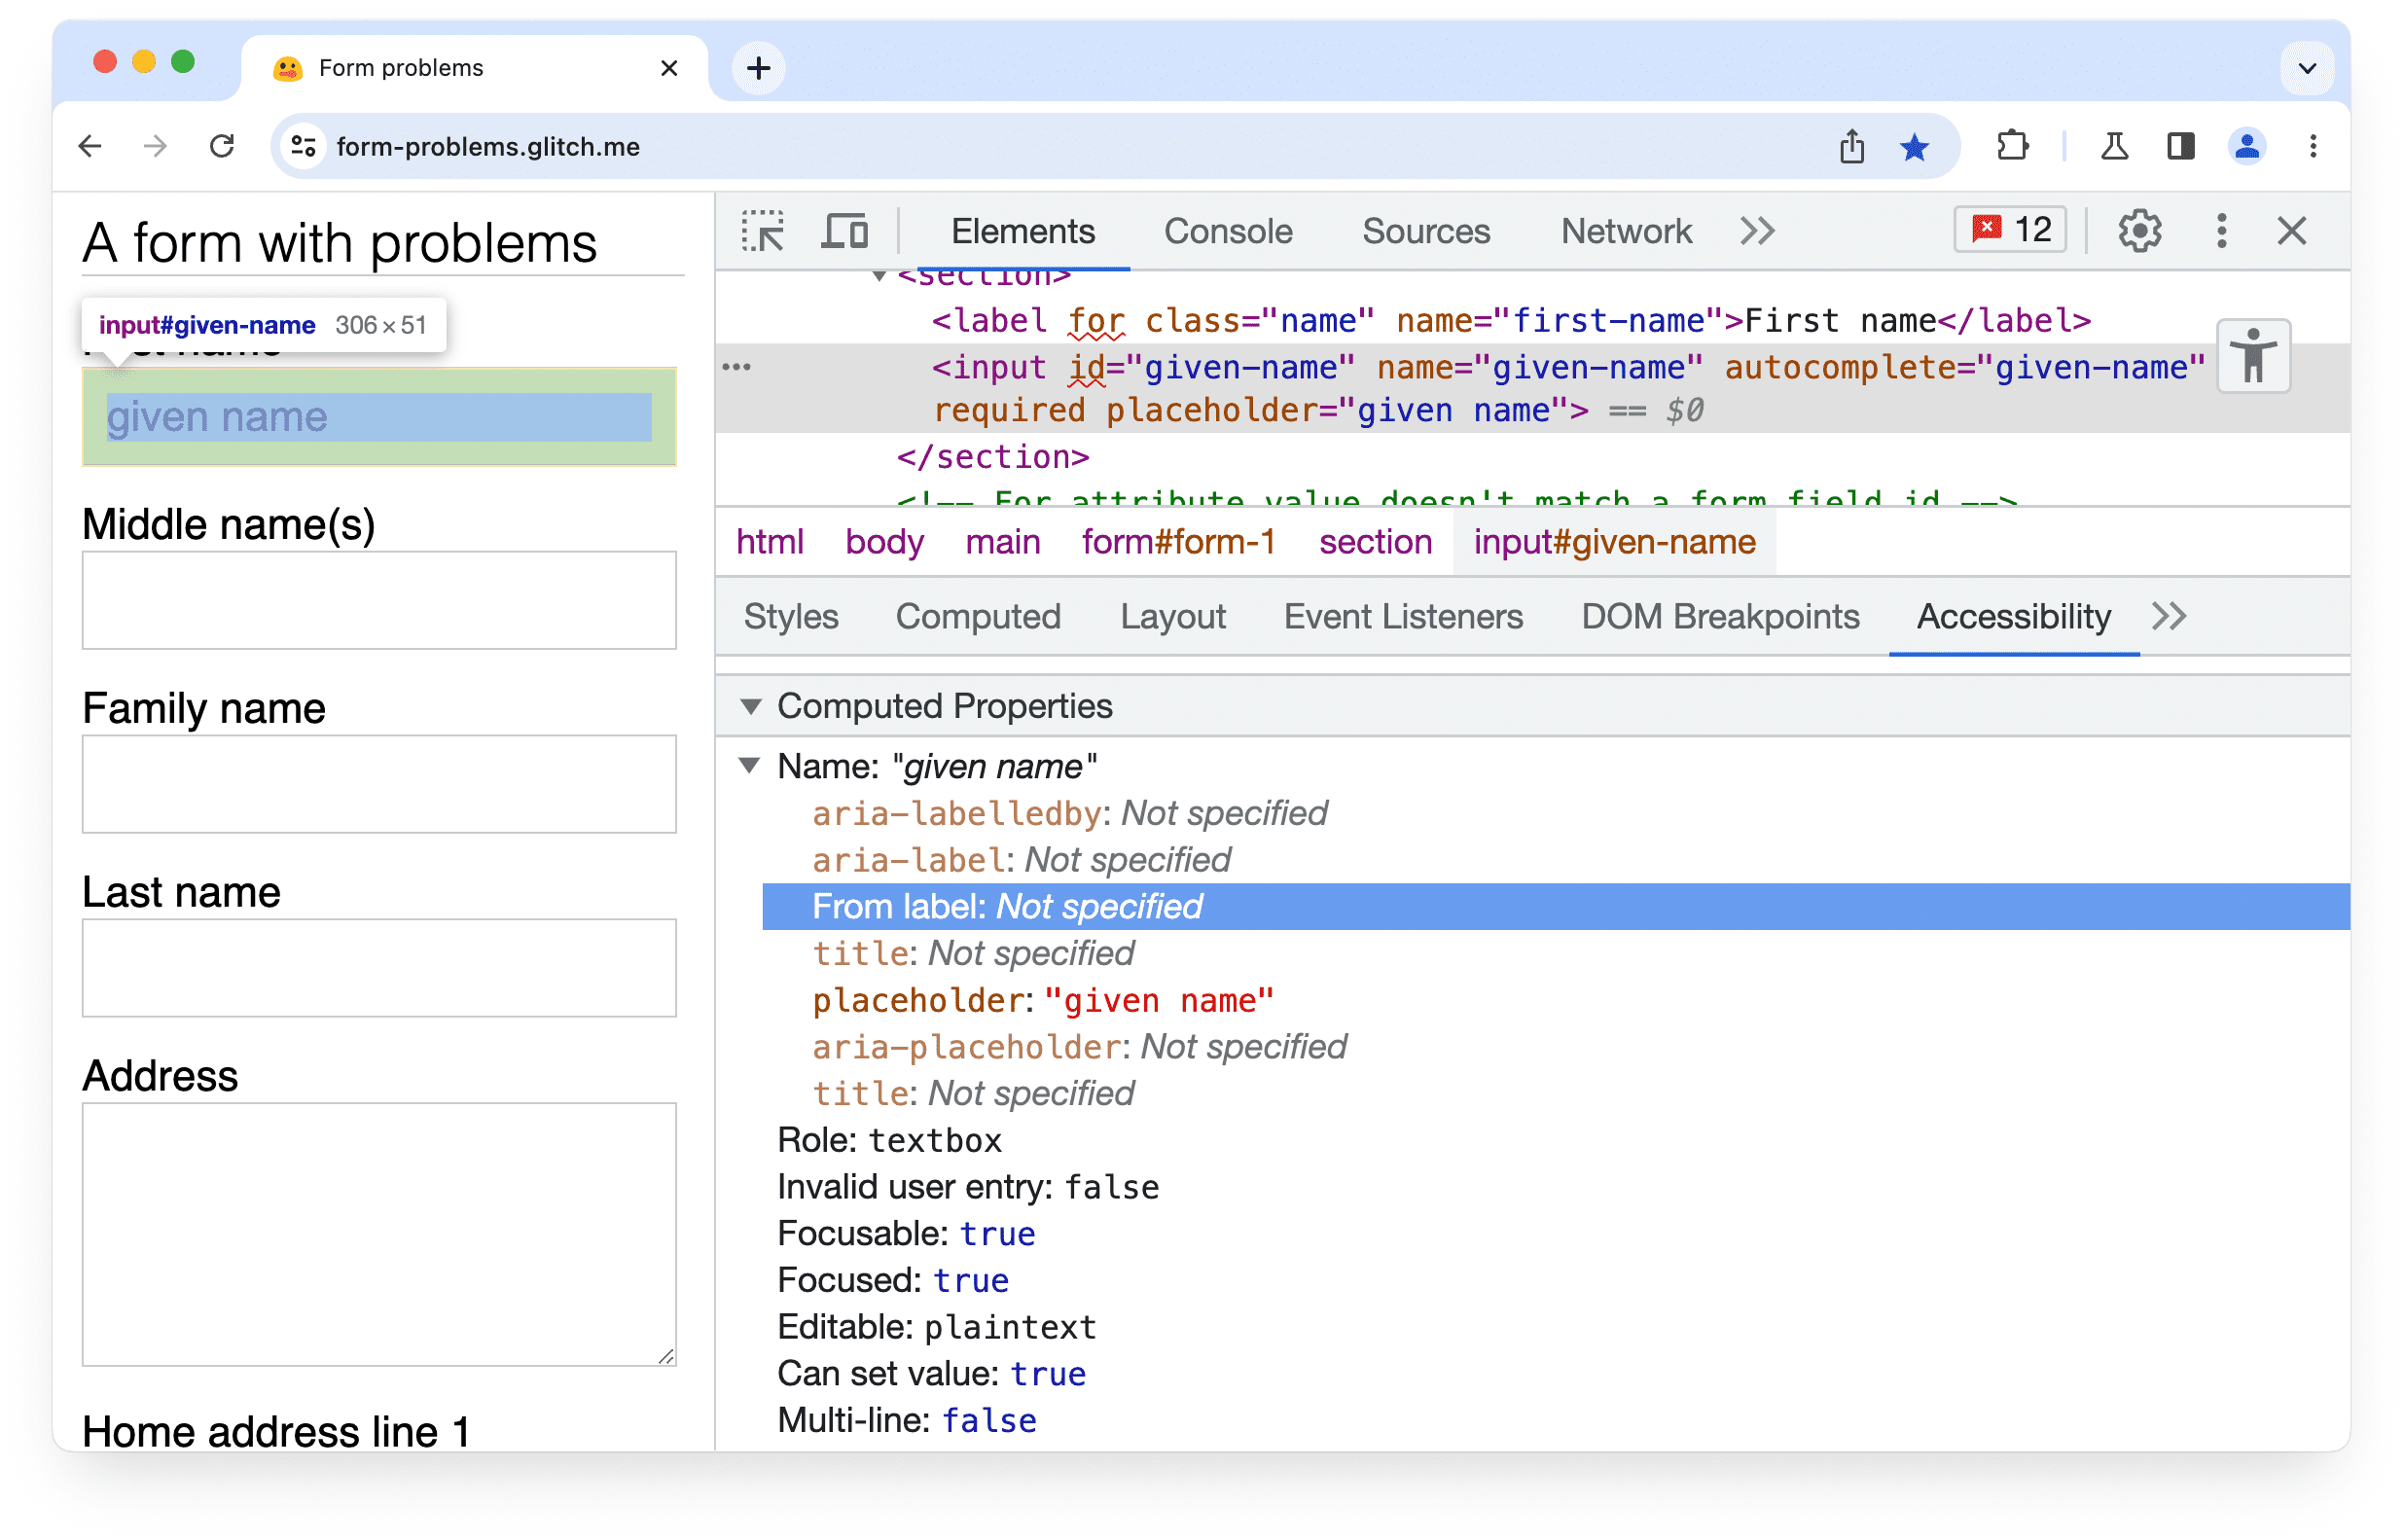 Narzędzia deweloperskie w Chrome
Panel ułatwień dostępu z informacją, że dla elementu wejściowego formularza nie znaleziono pasującej etykiety lub atrybutu aria-labelledby.